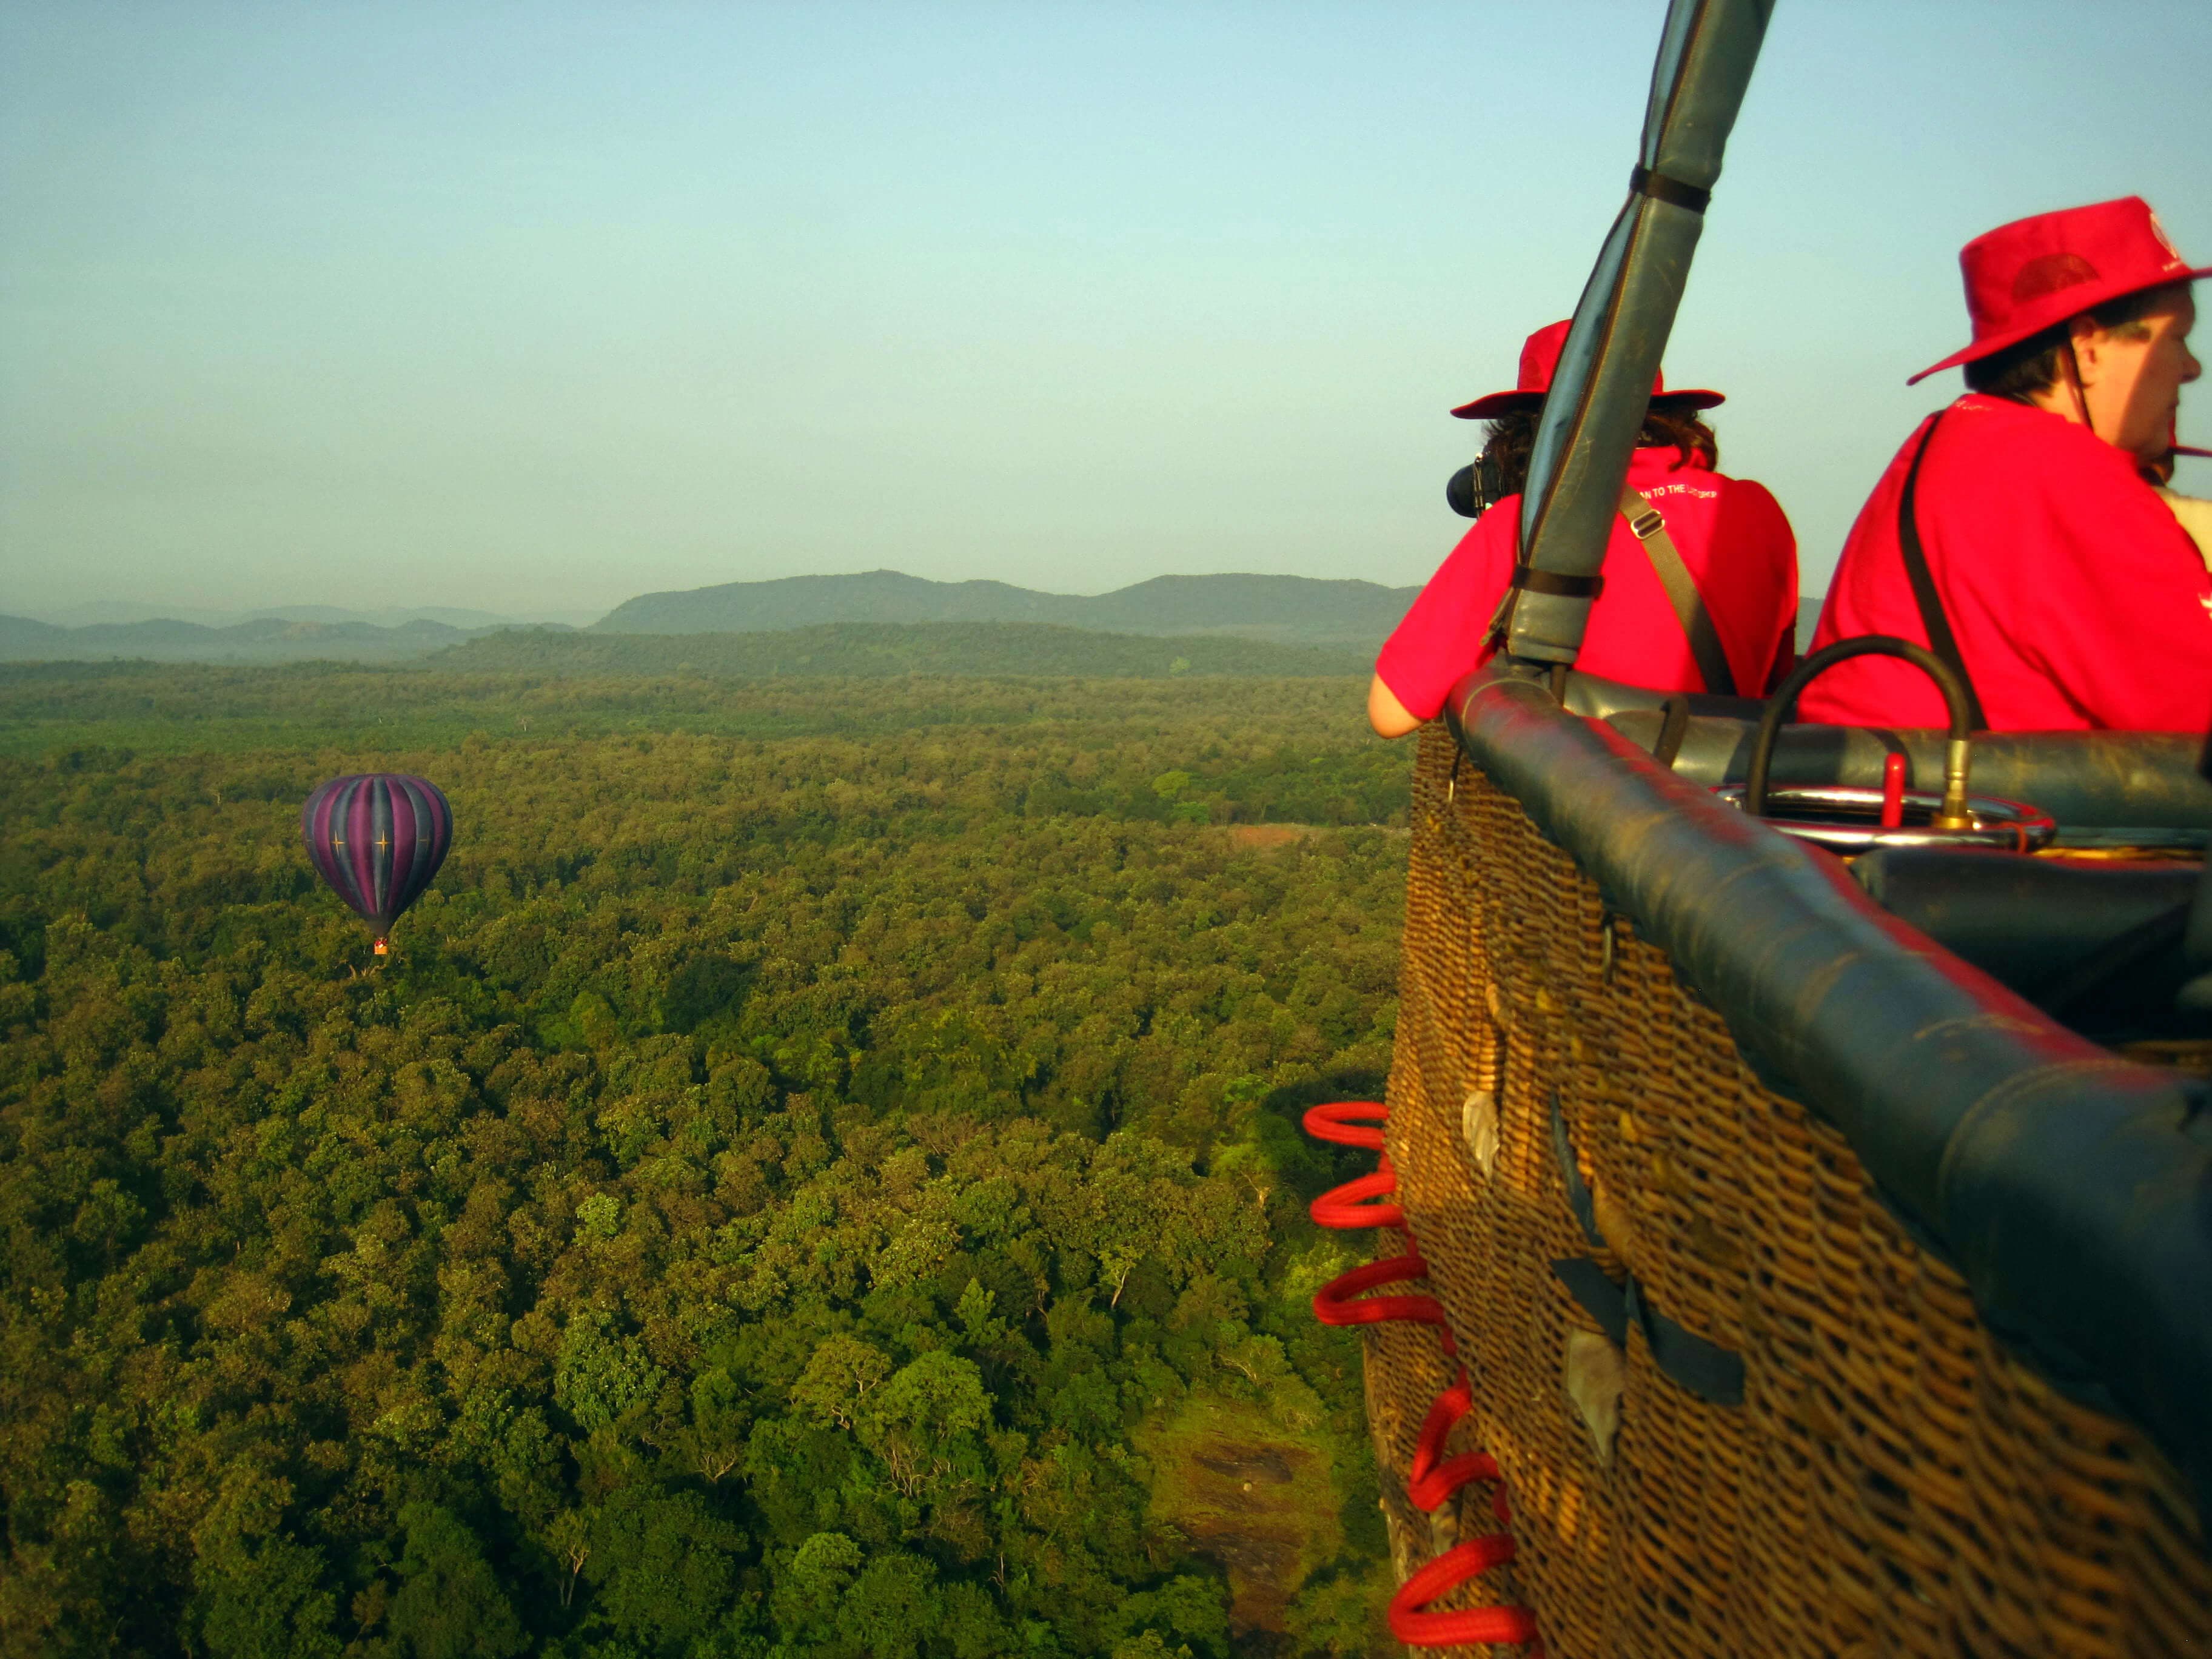 Touristen beobachten wunderschöne Landschaften in Sri Lanka mit einem Heißluftballon